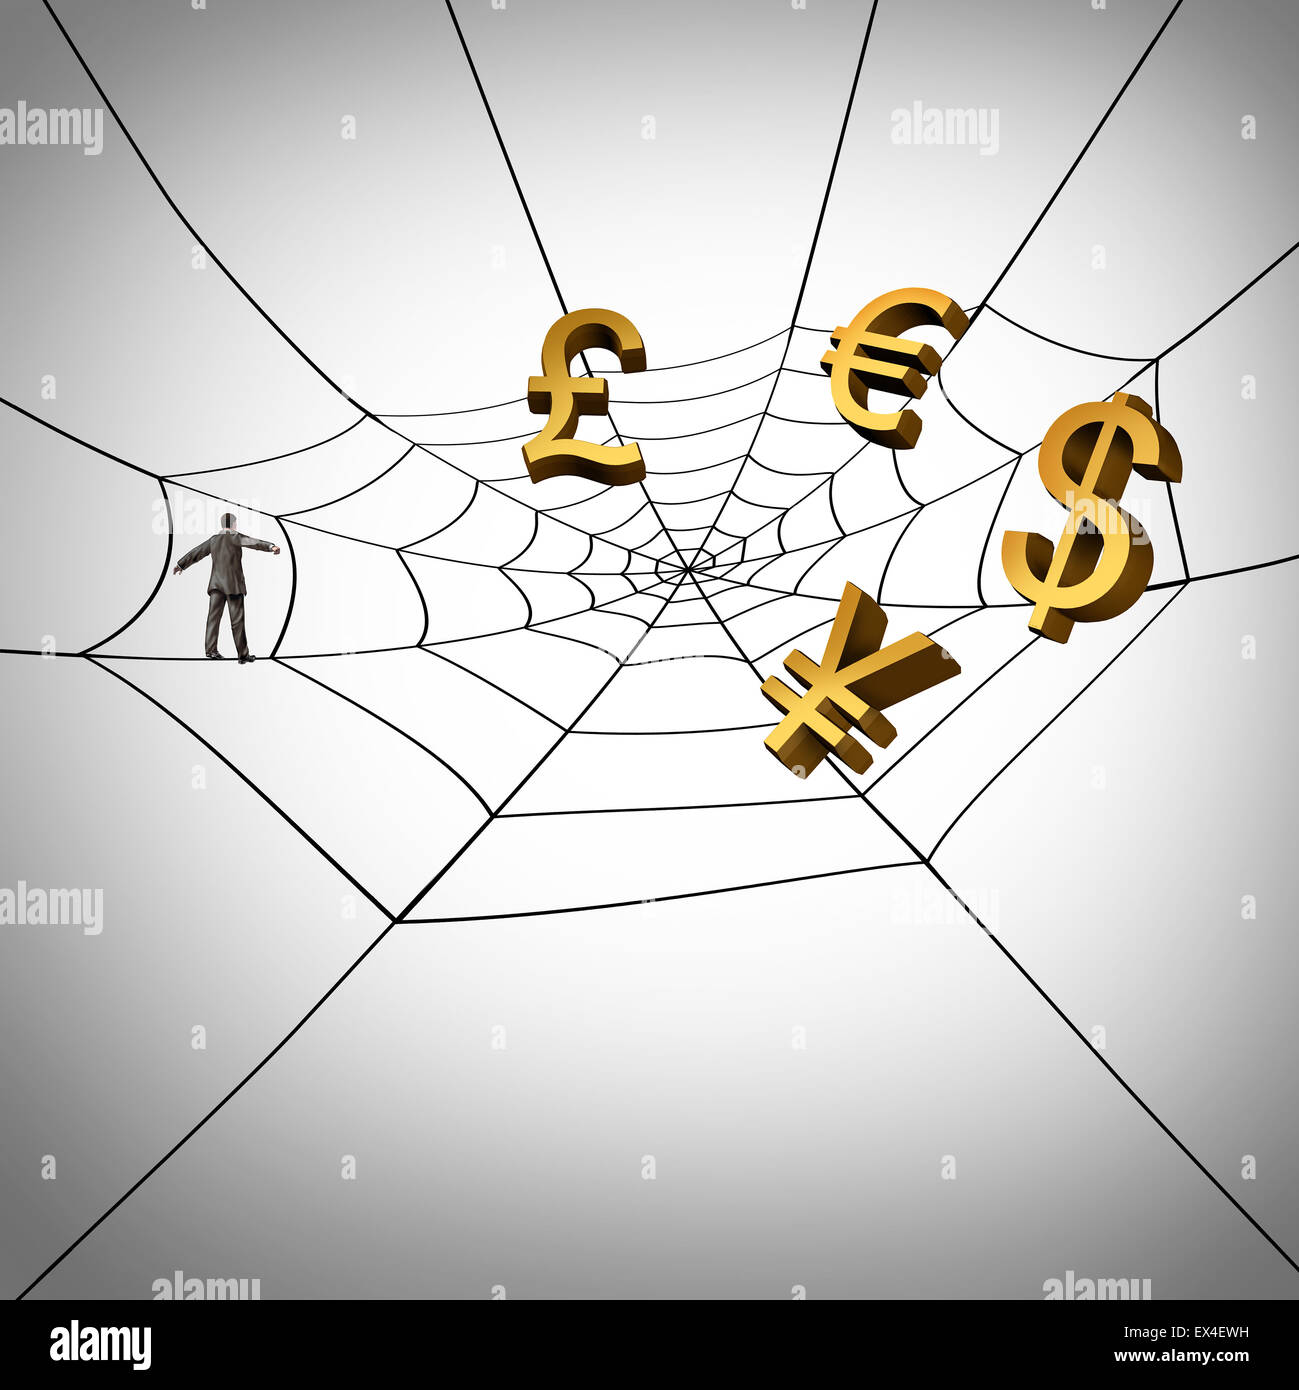 Le le travail et gagner de l'argent mondial de l'internet comme un homme marchant sur un symbole d'araignée avec icônes monnaie piégés dans le réseau en tant qu'entrepreneur la collecte des recettes provenant des ventes internet internationale. Banque D'Images